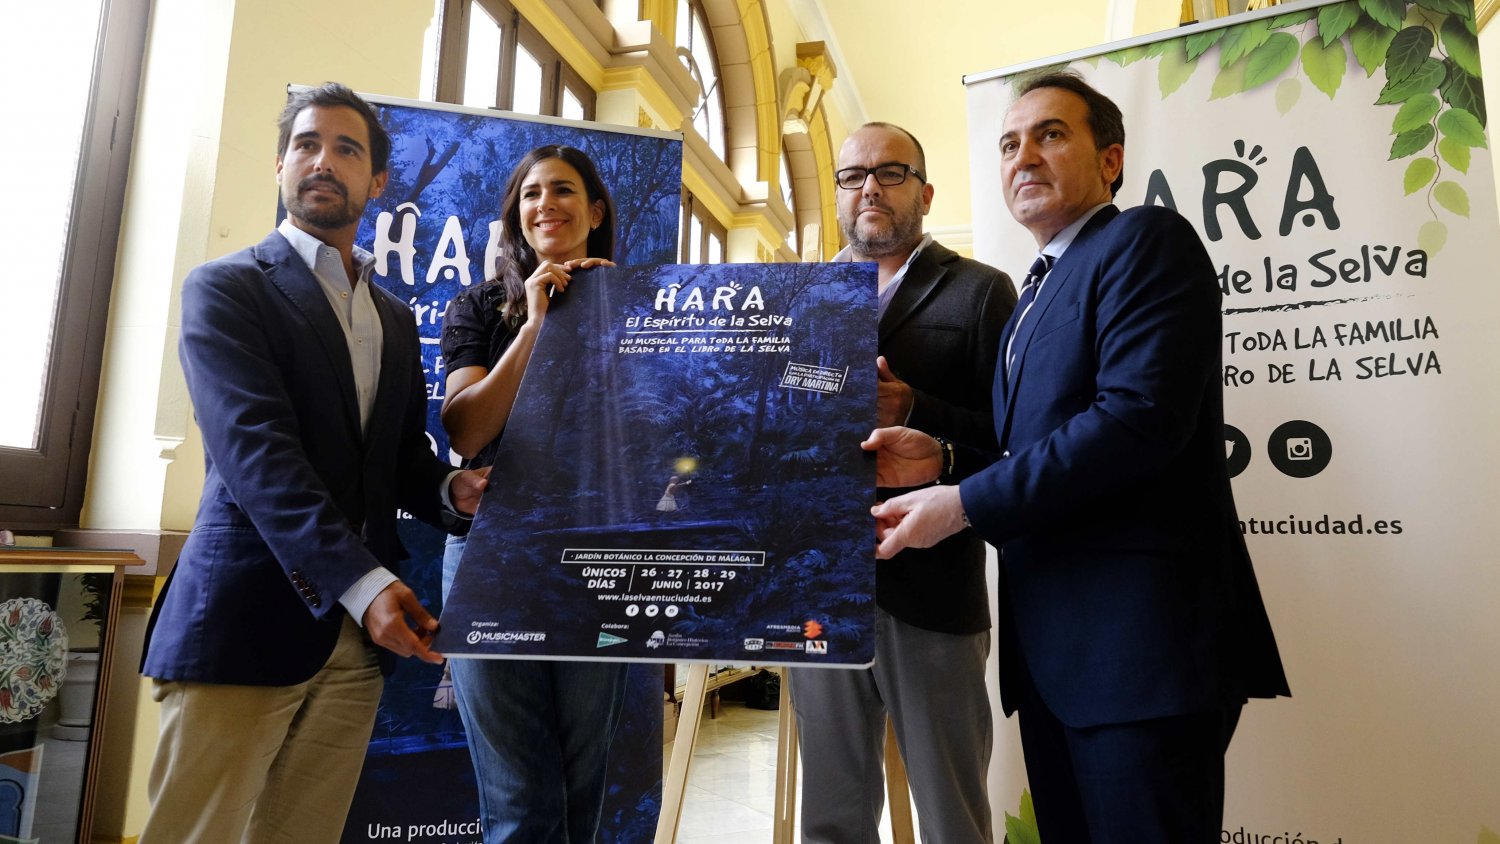 El Jardín Botánico de Málaga acoge el estreno del musical Hara, El espíritu de la selva